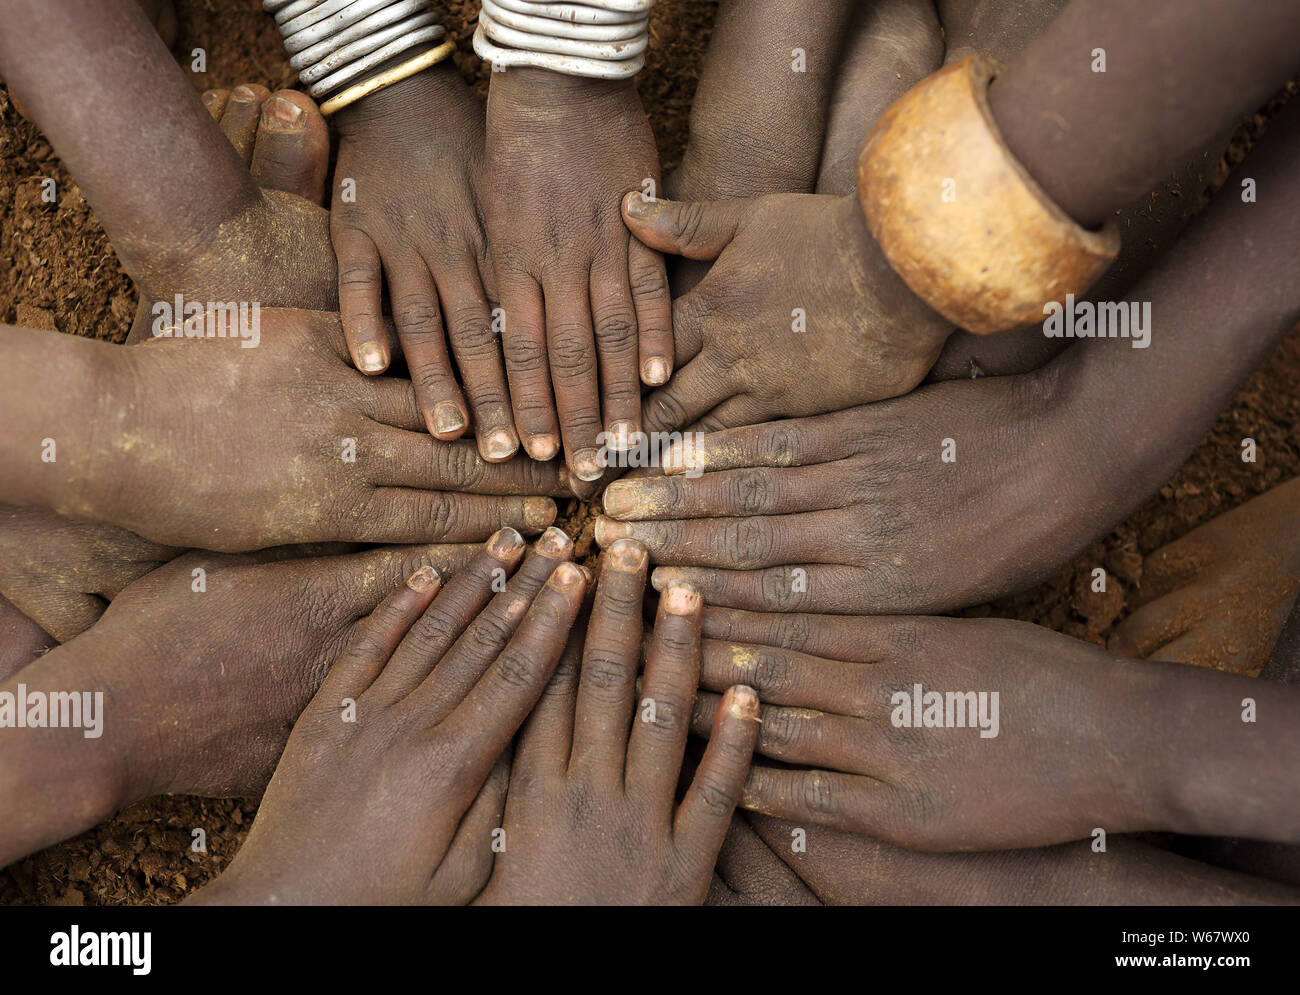 Cérémonie d'Afrique de la tribu Mursi, close-up de mains d'un groupe d'enfants, de l'Éthiopie Banque D'Images